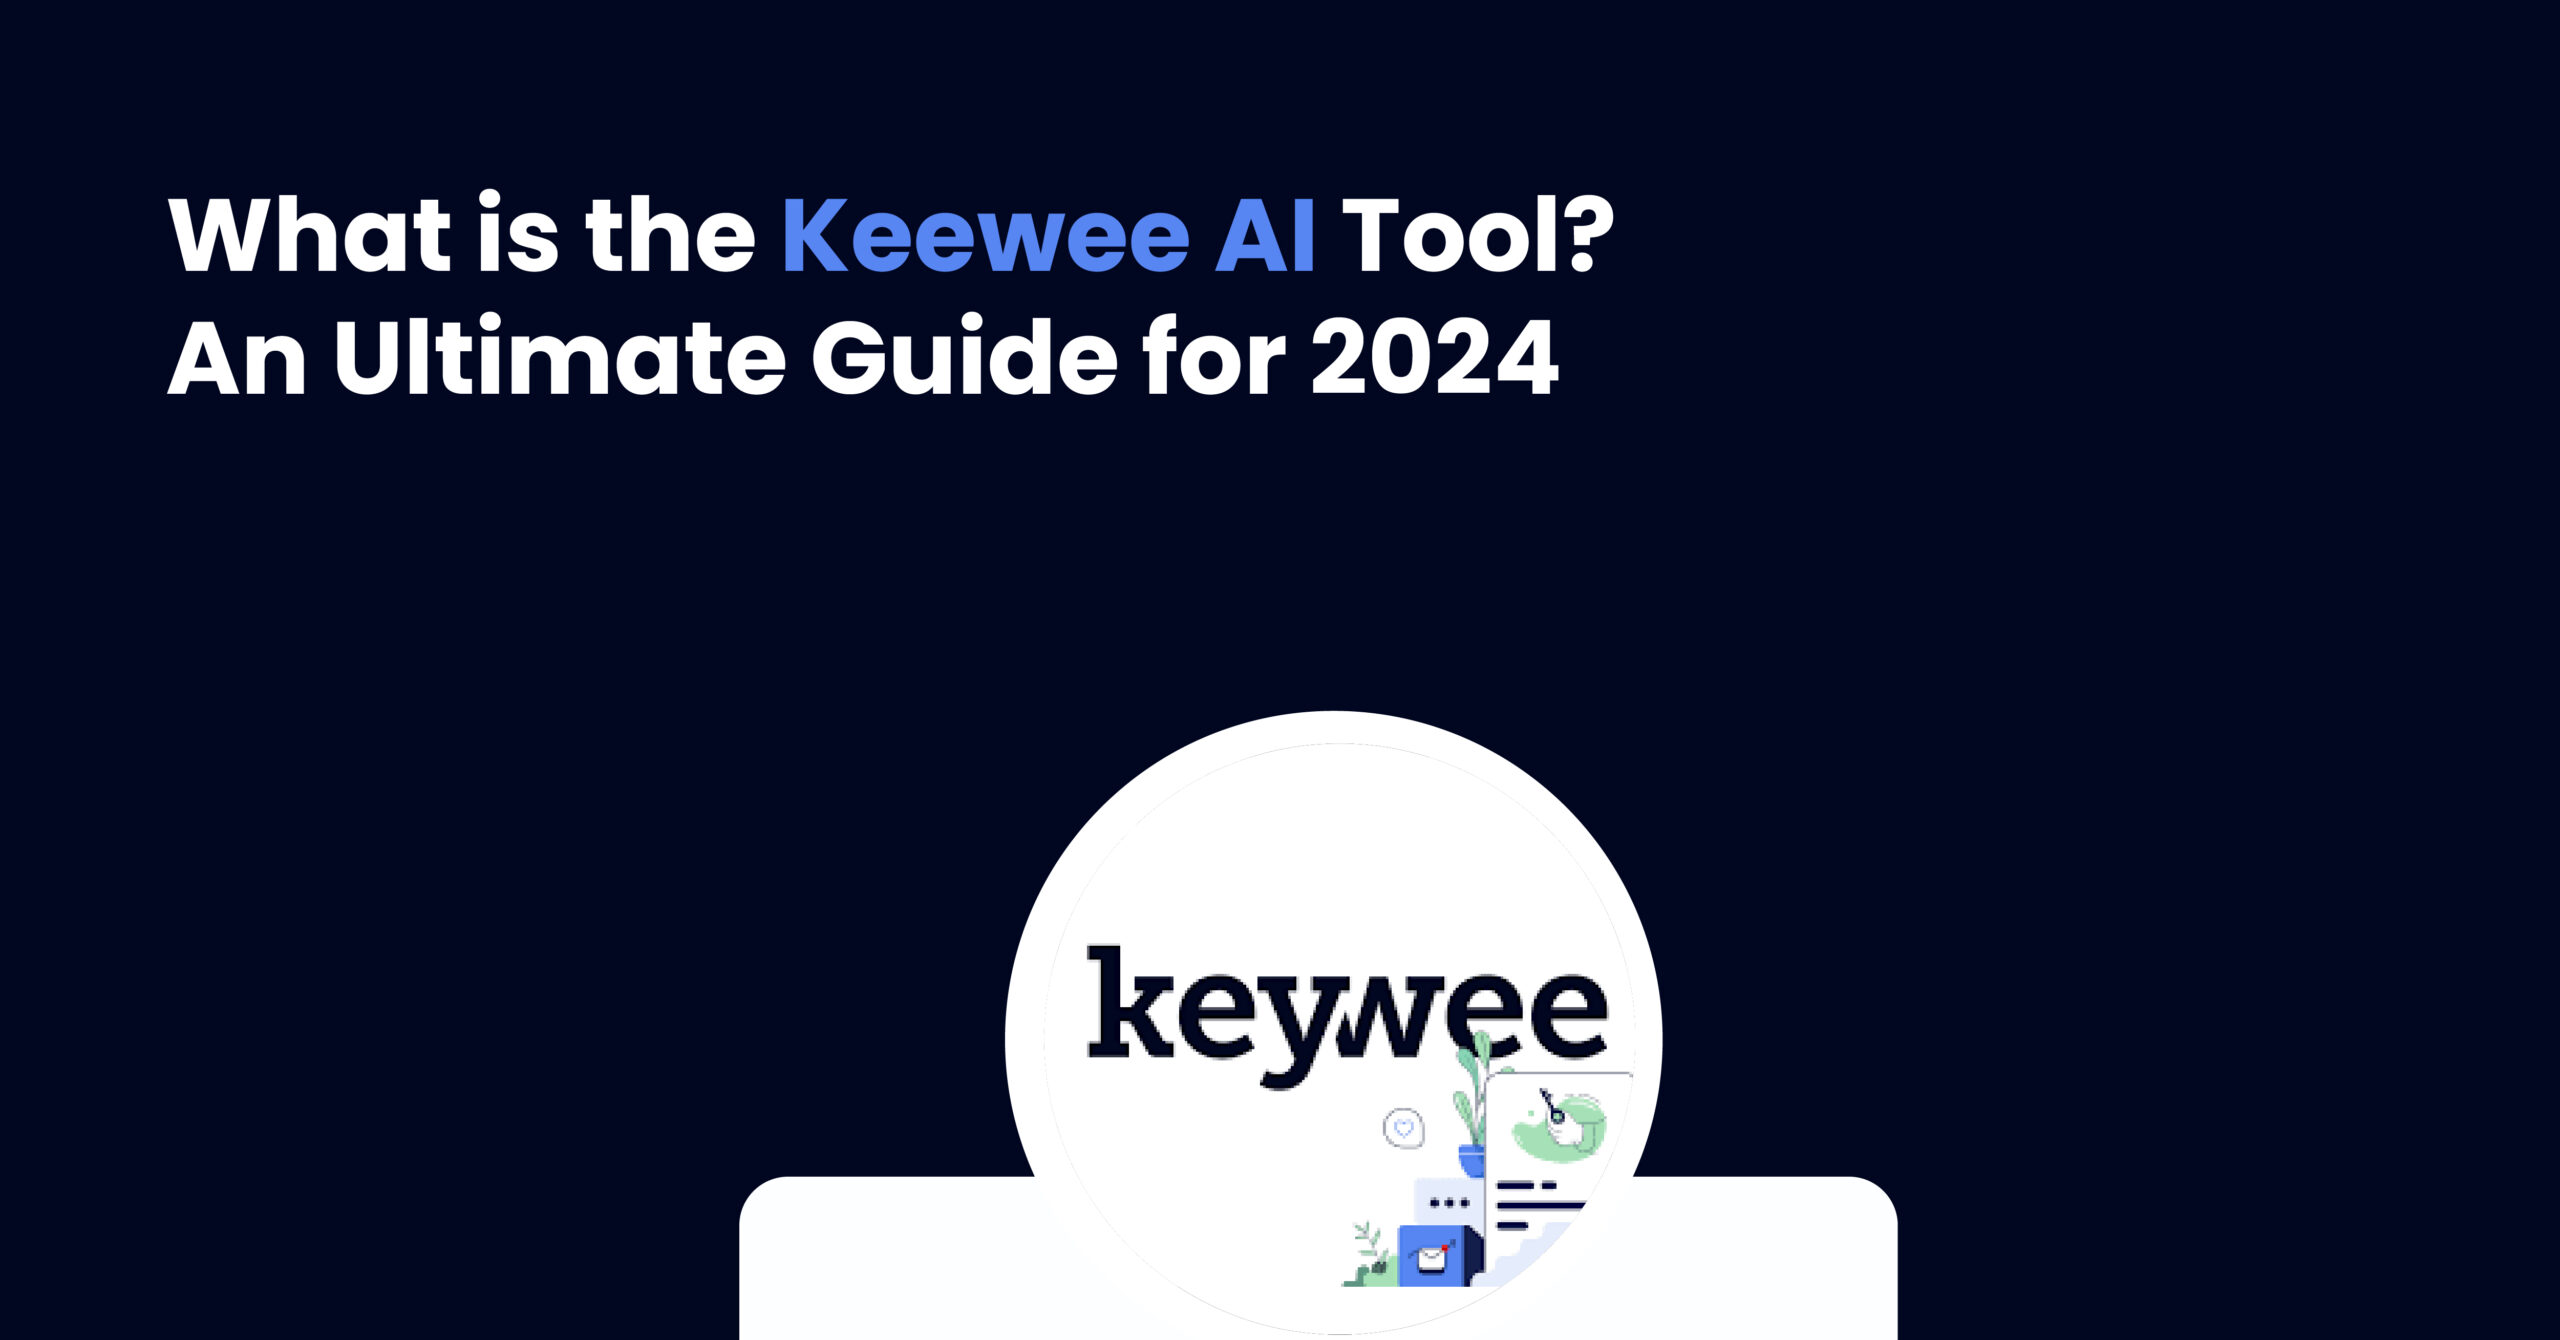 Keewee AI Tool